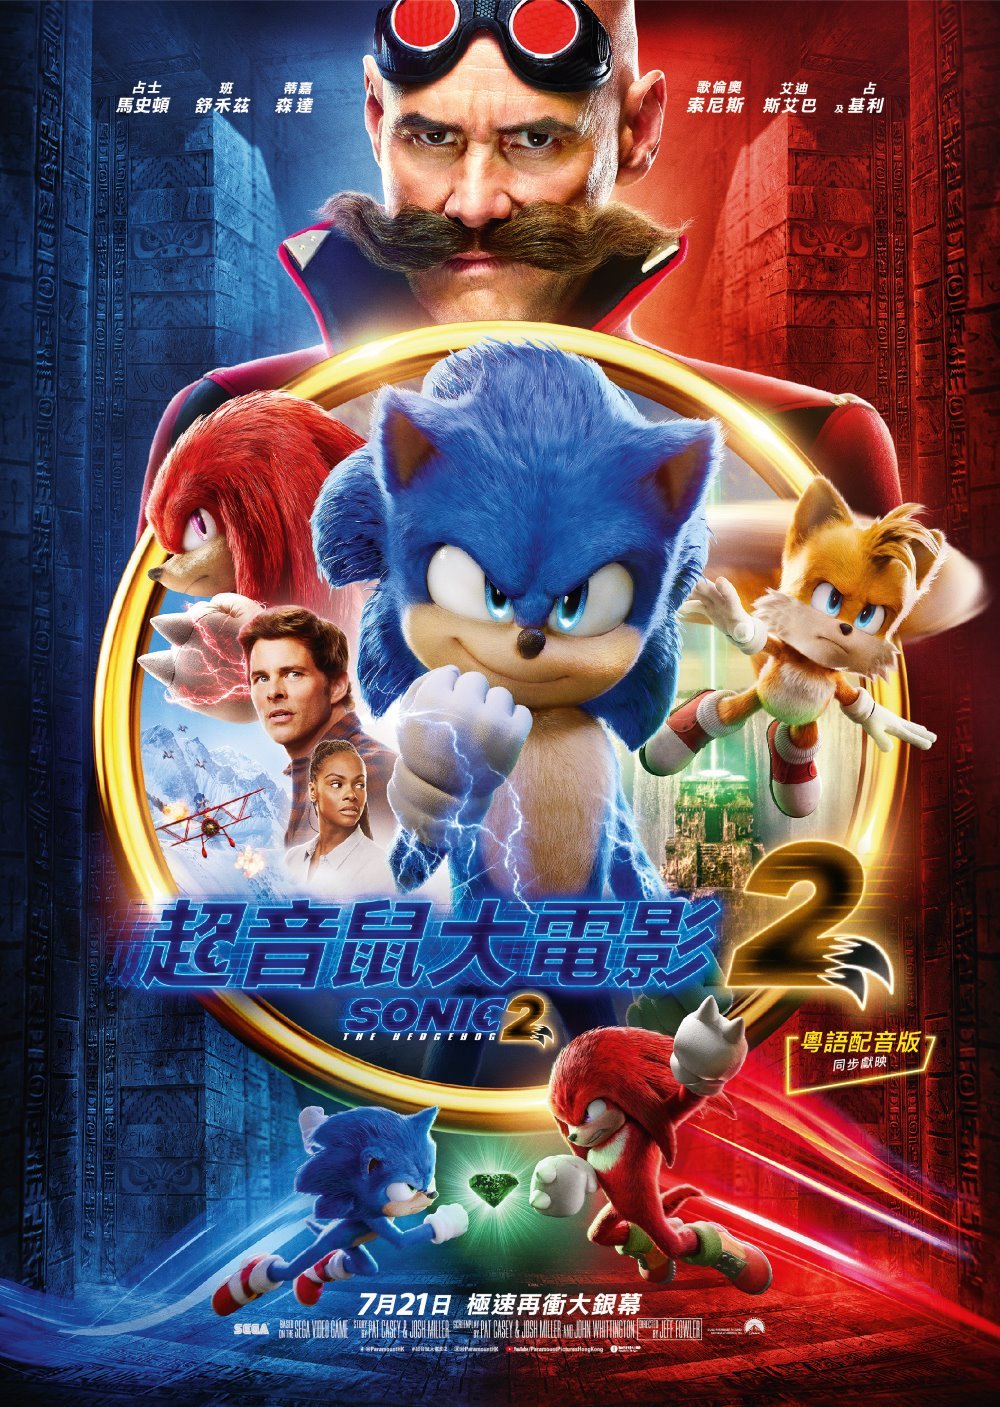 超音鼠大電影2 (英語版)電影圖片 - Sonic2_Poster-01_1656922053.jpg